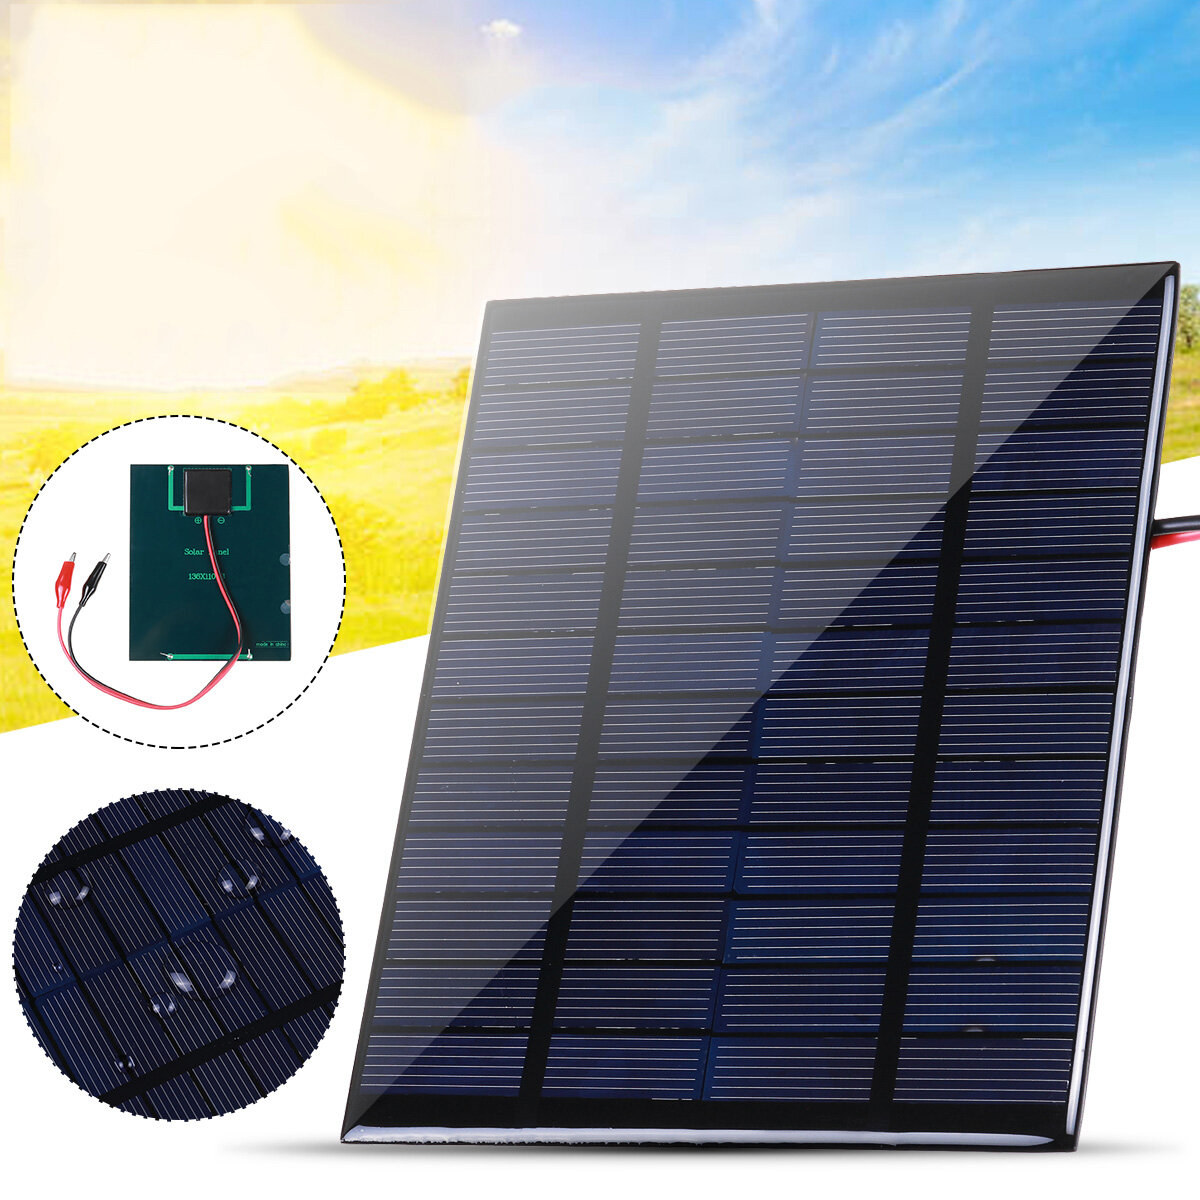 لوحة شمسية 10 واط مع مقاطع خلية شمسية من السيليكون الكريستالات IP65 محمولة ضد للماء للسفر والتخييم في الهواء الطلق